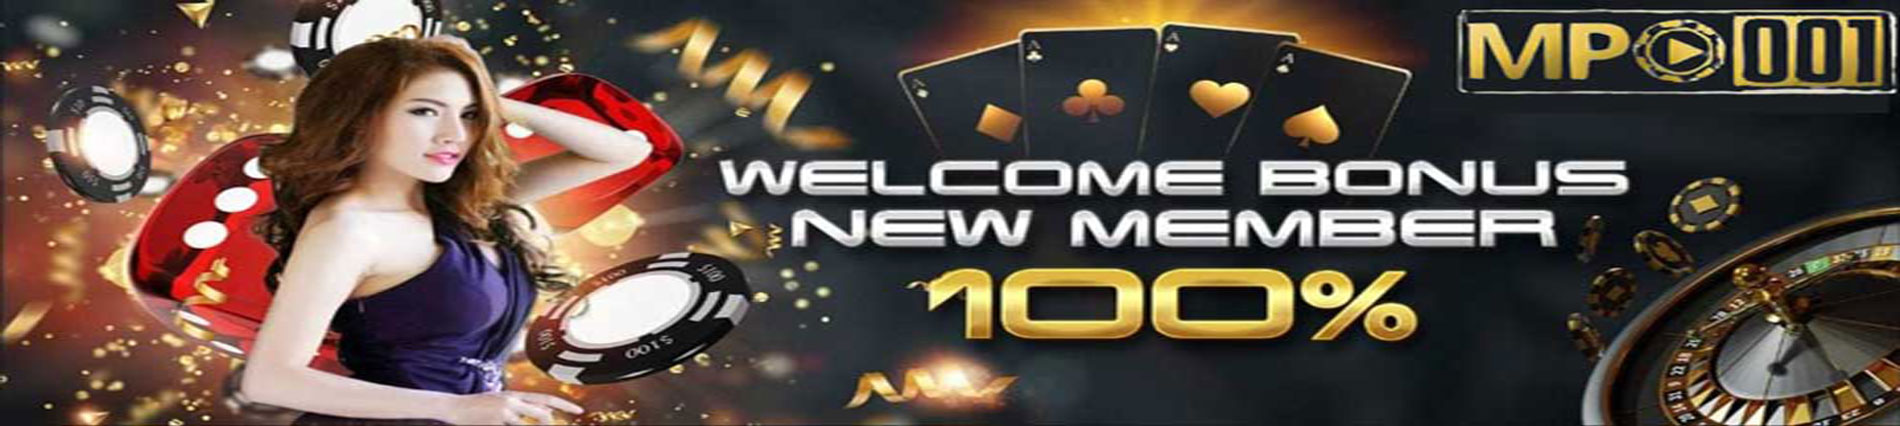 MPO001 welcome bonus 100% all games slot